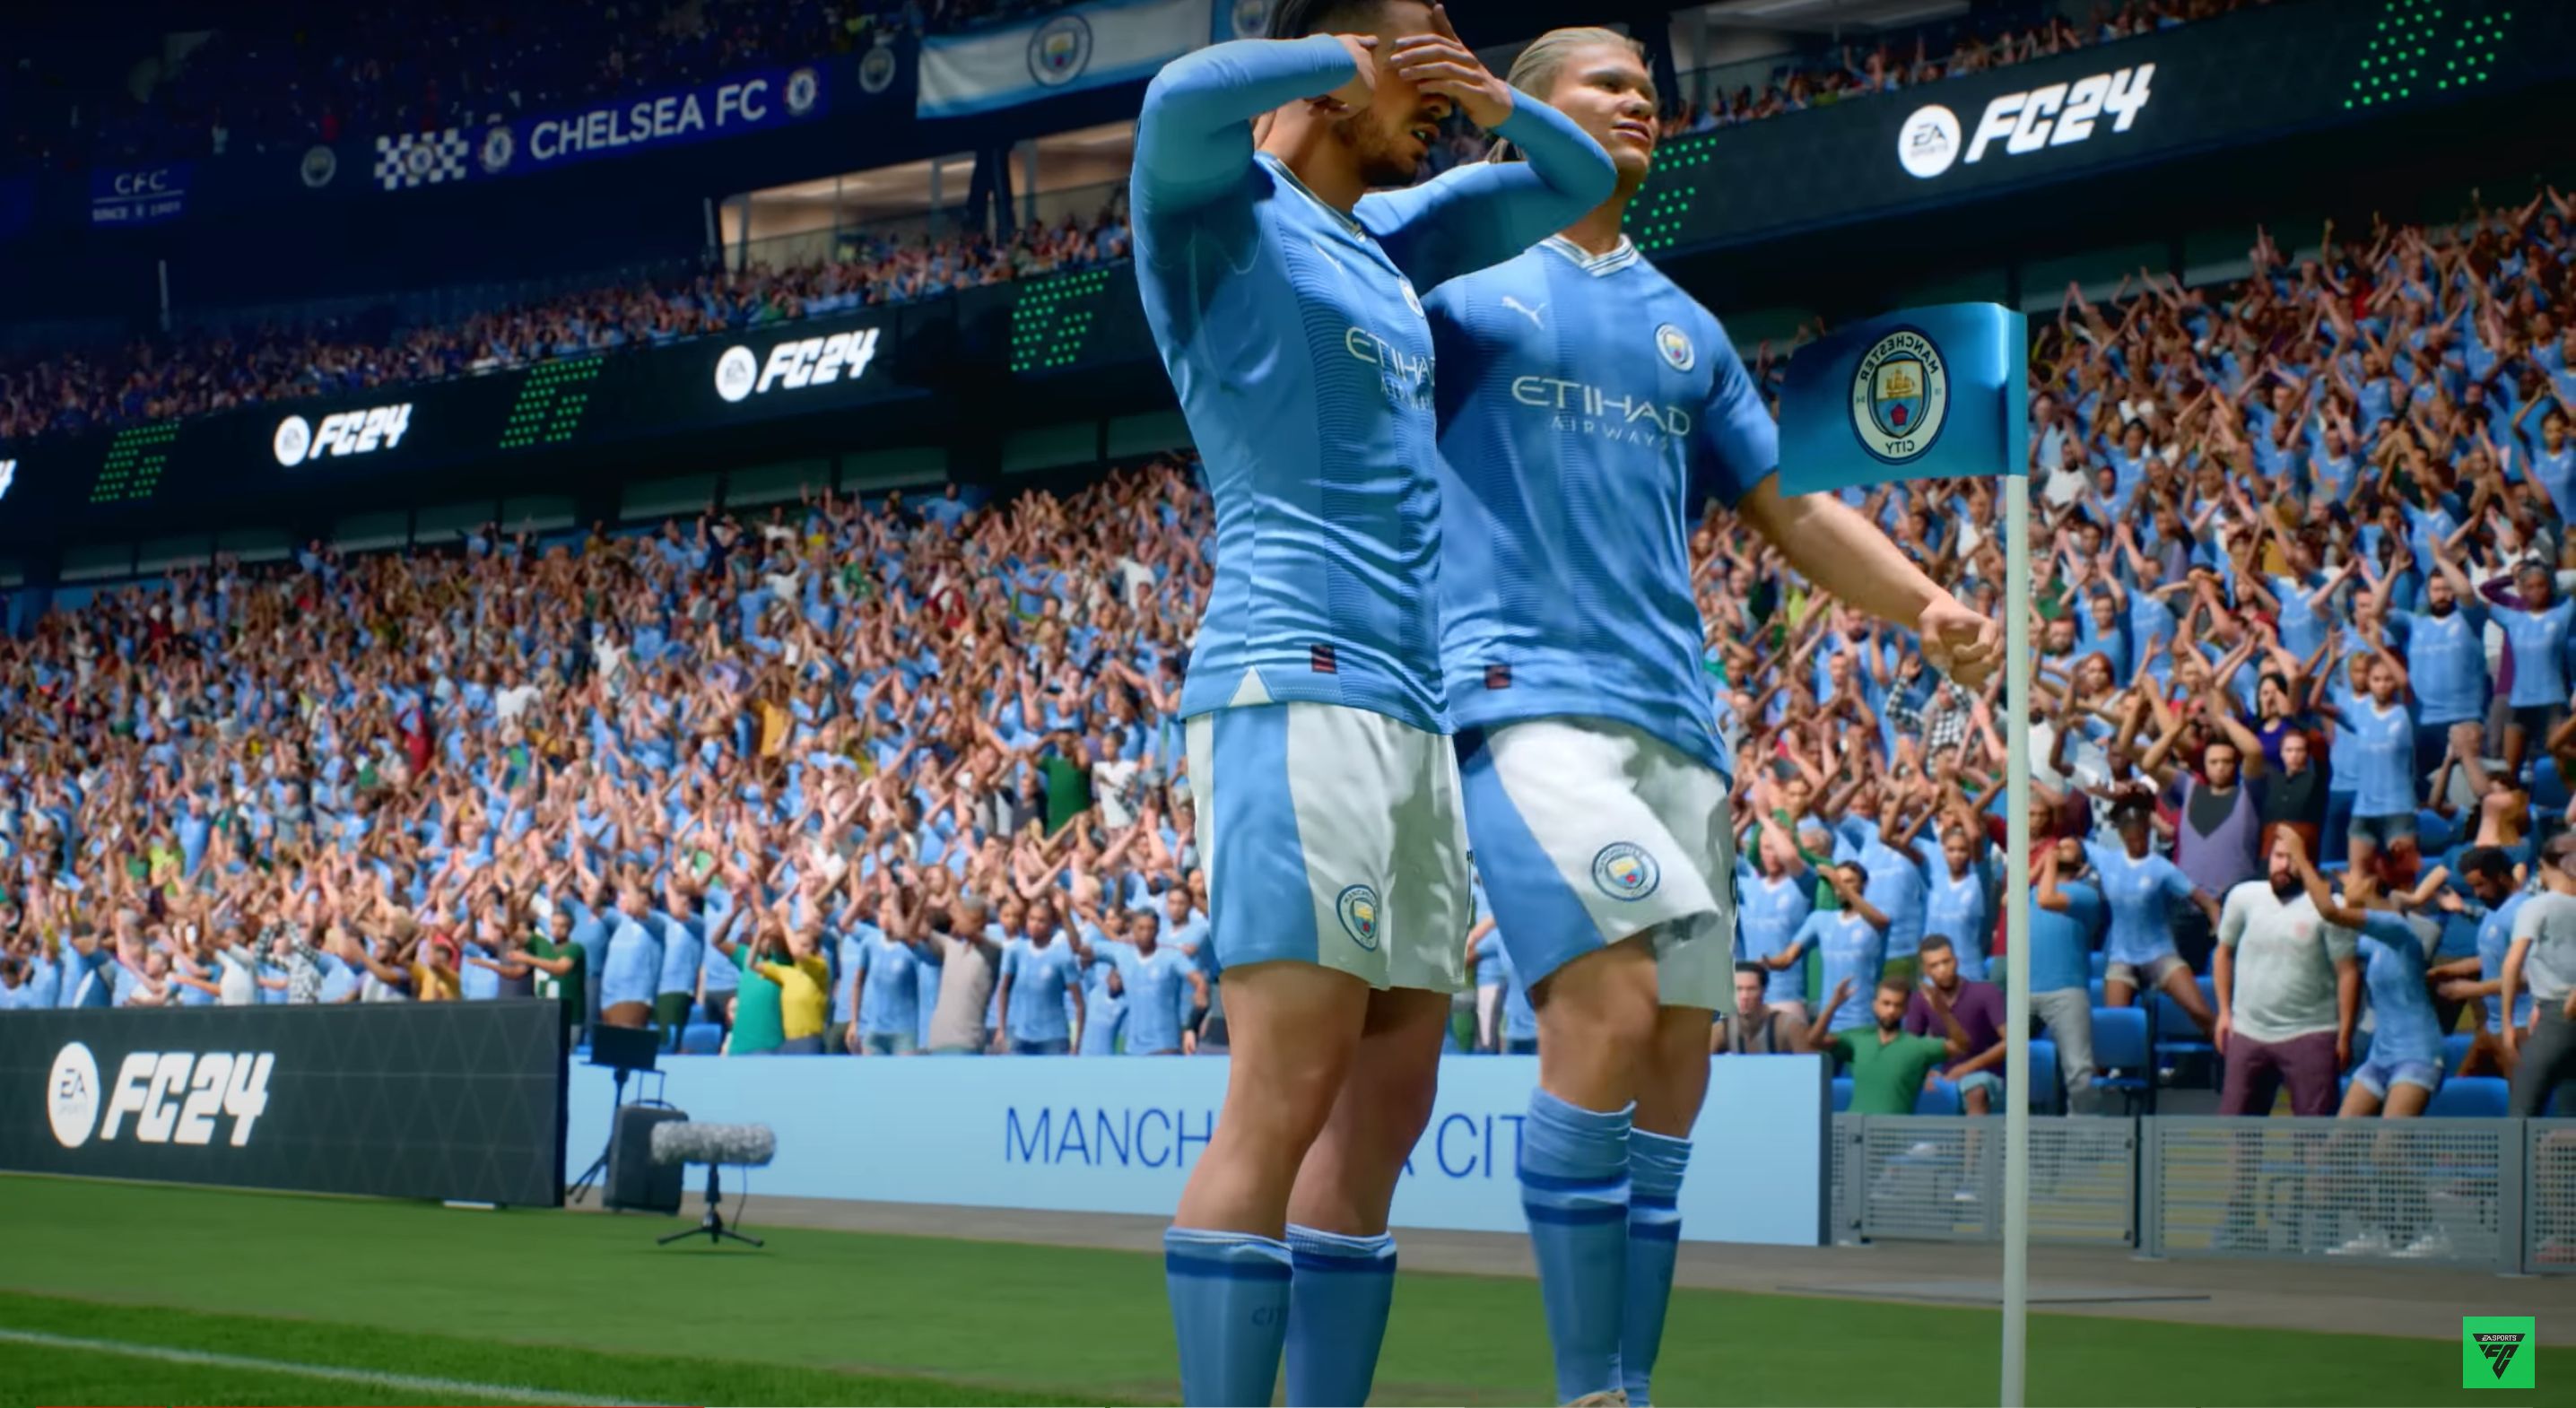 Voici le trailer du futur meilleur jeu vidéo de foot du monde (et tout ce que l'on en sait)